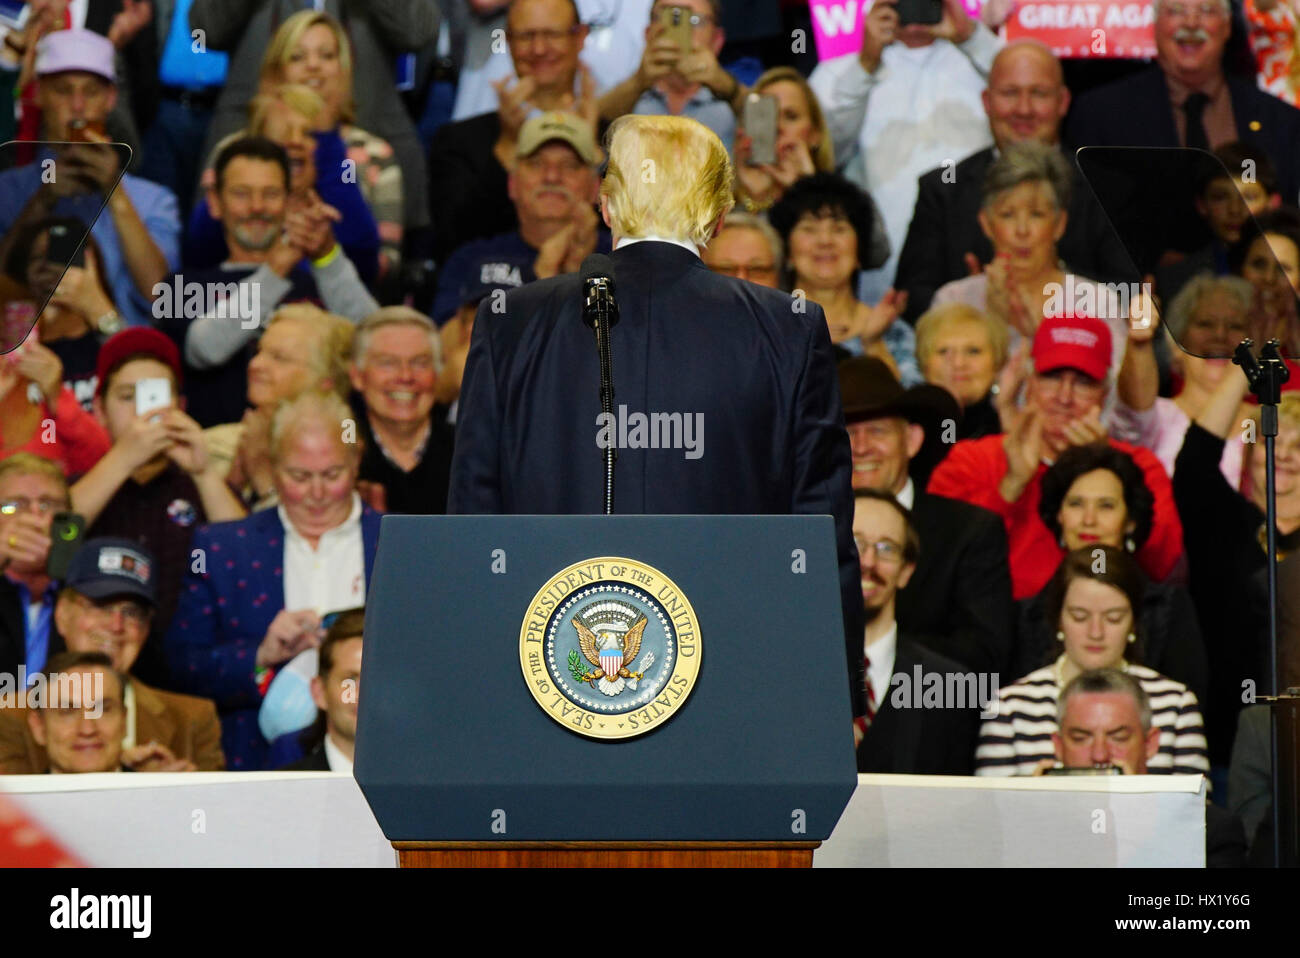 Präsident Donald J Trump vor Fans hinter ihm während einer Kundgebung in Louisville Exposition Center am 20. März 2017 in Louisville, Kentucky. Stockfoto